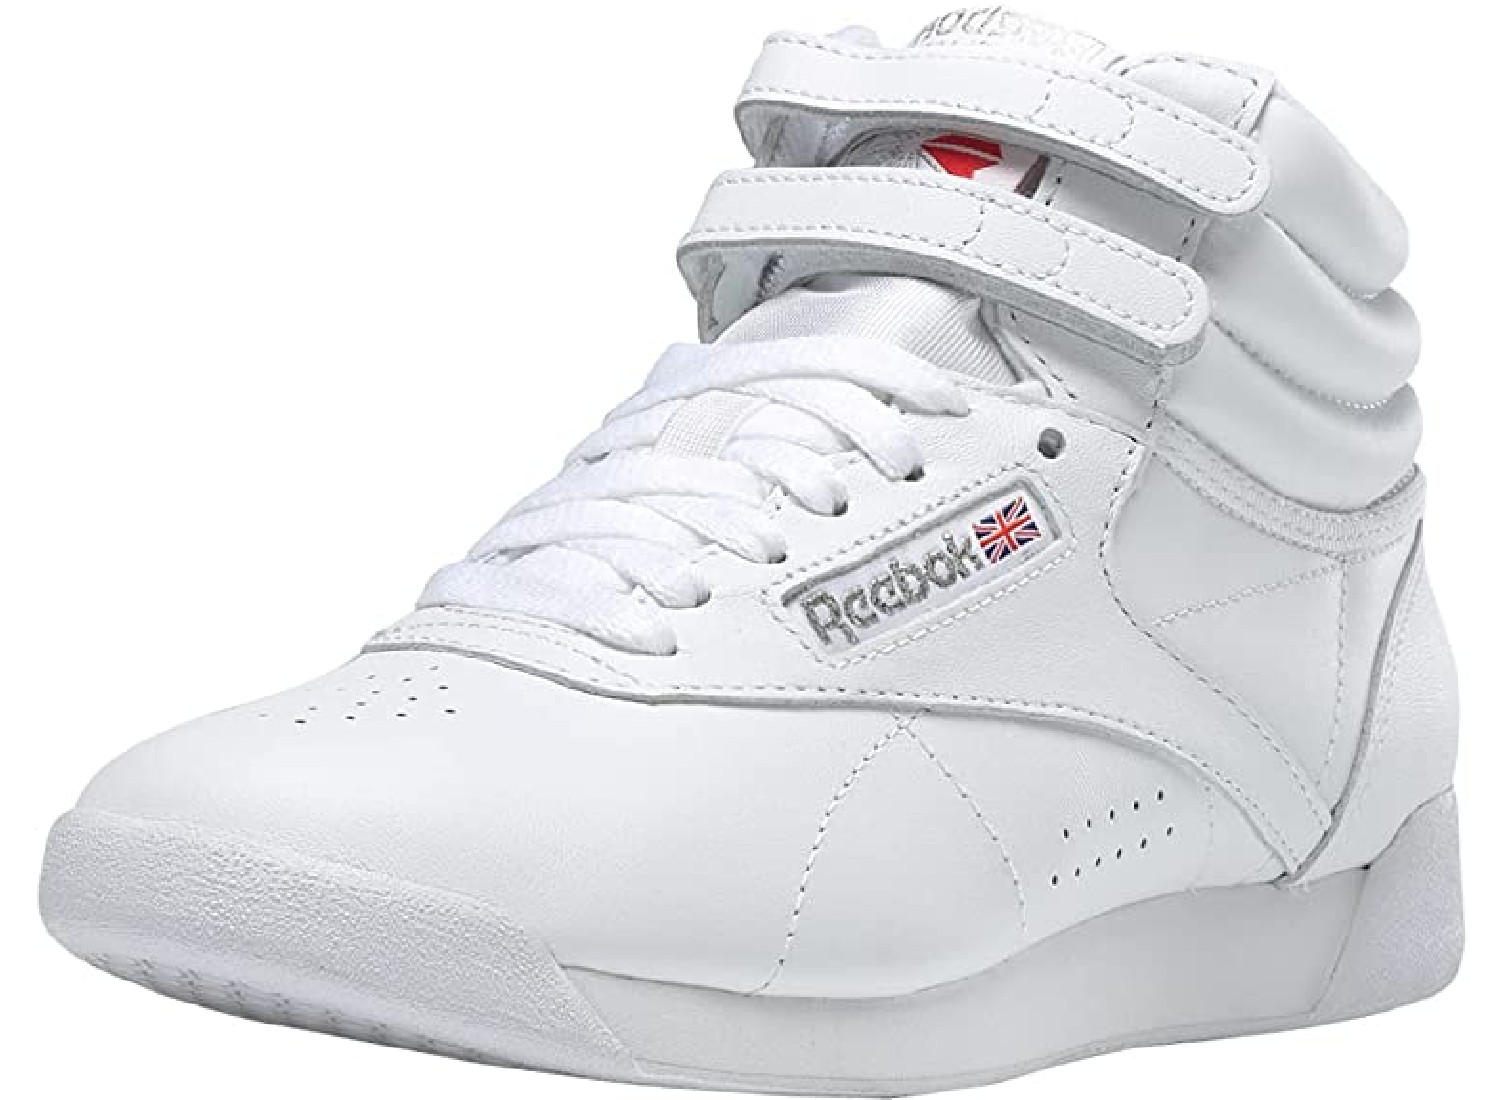 A white sneaker